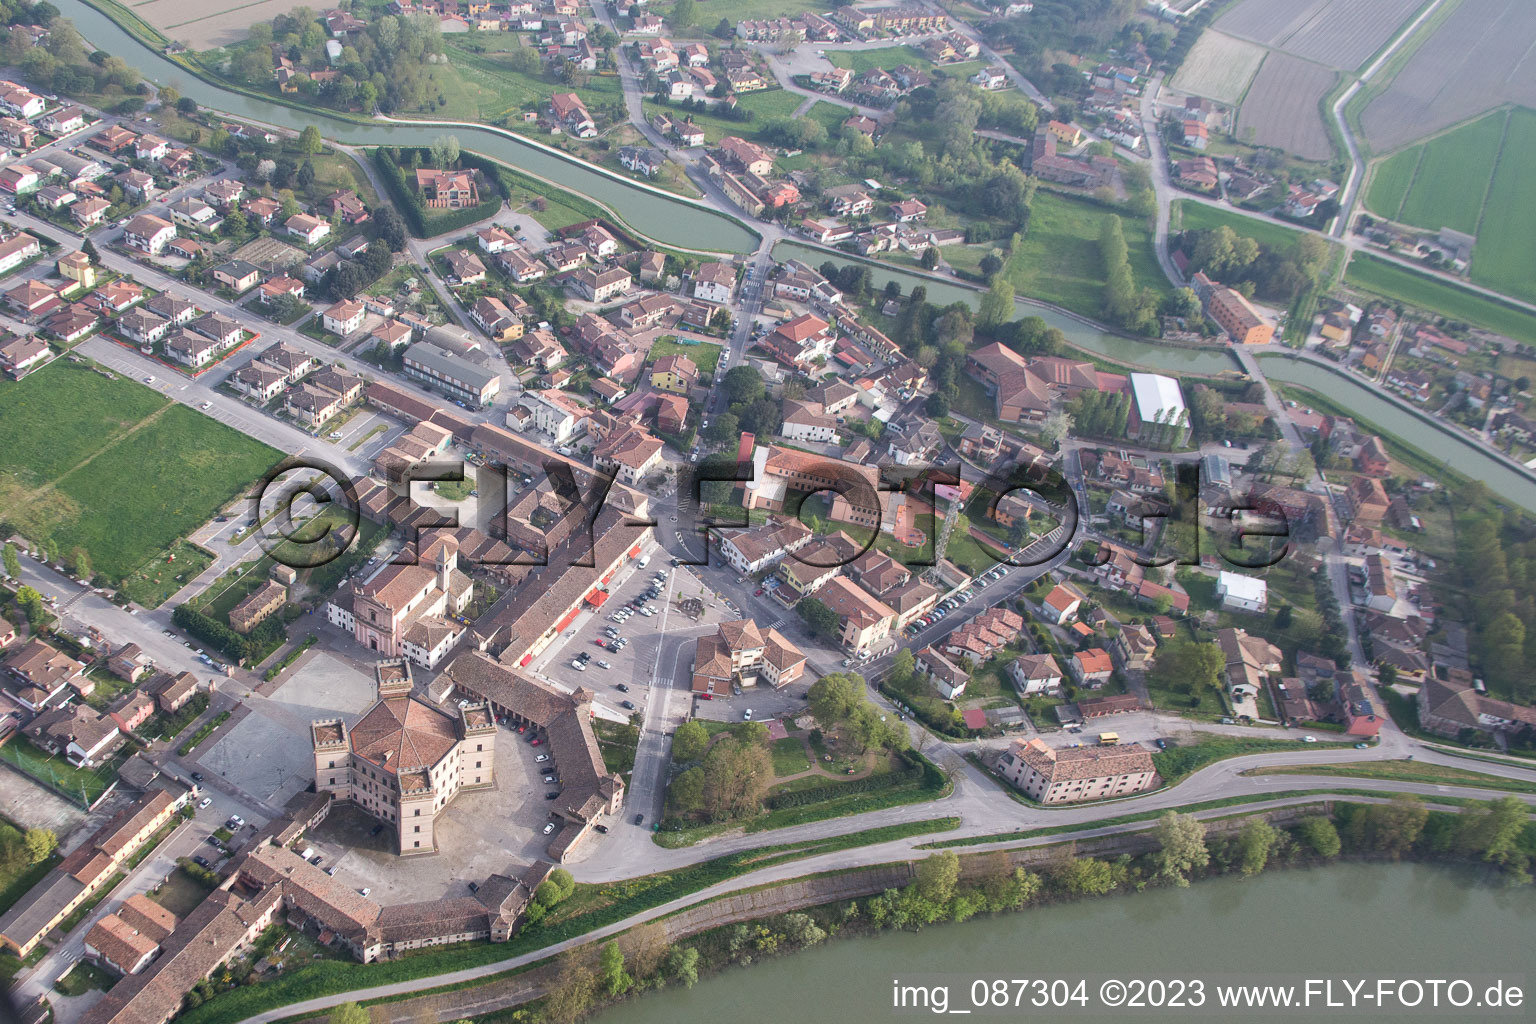 Mesola im Bundesland Emilia-Romagna, Italien aus der Luft betrachtet